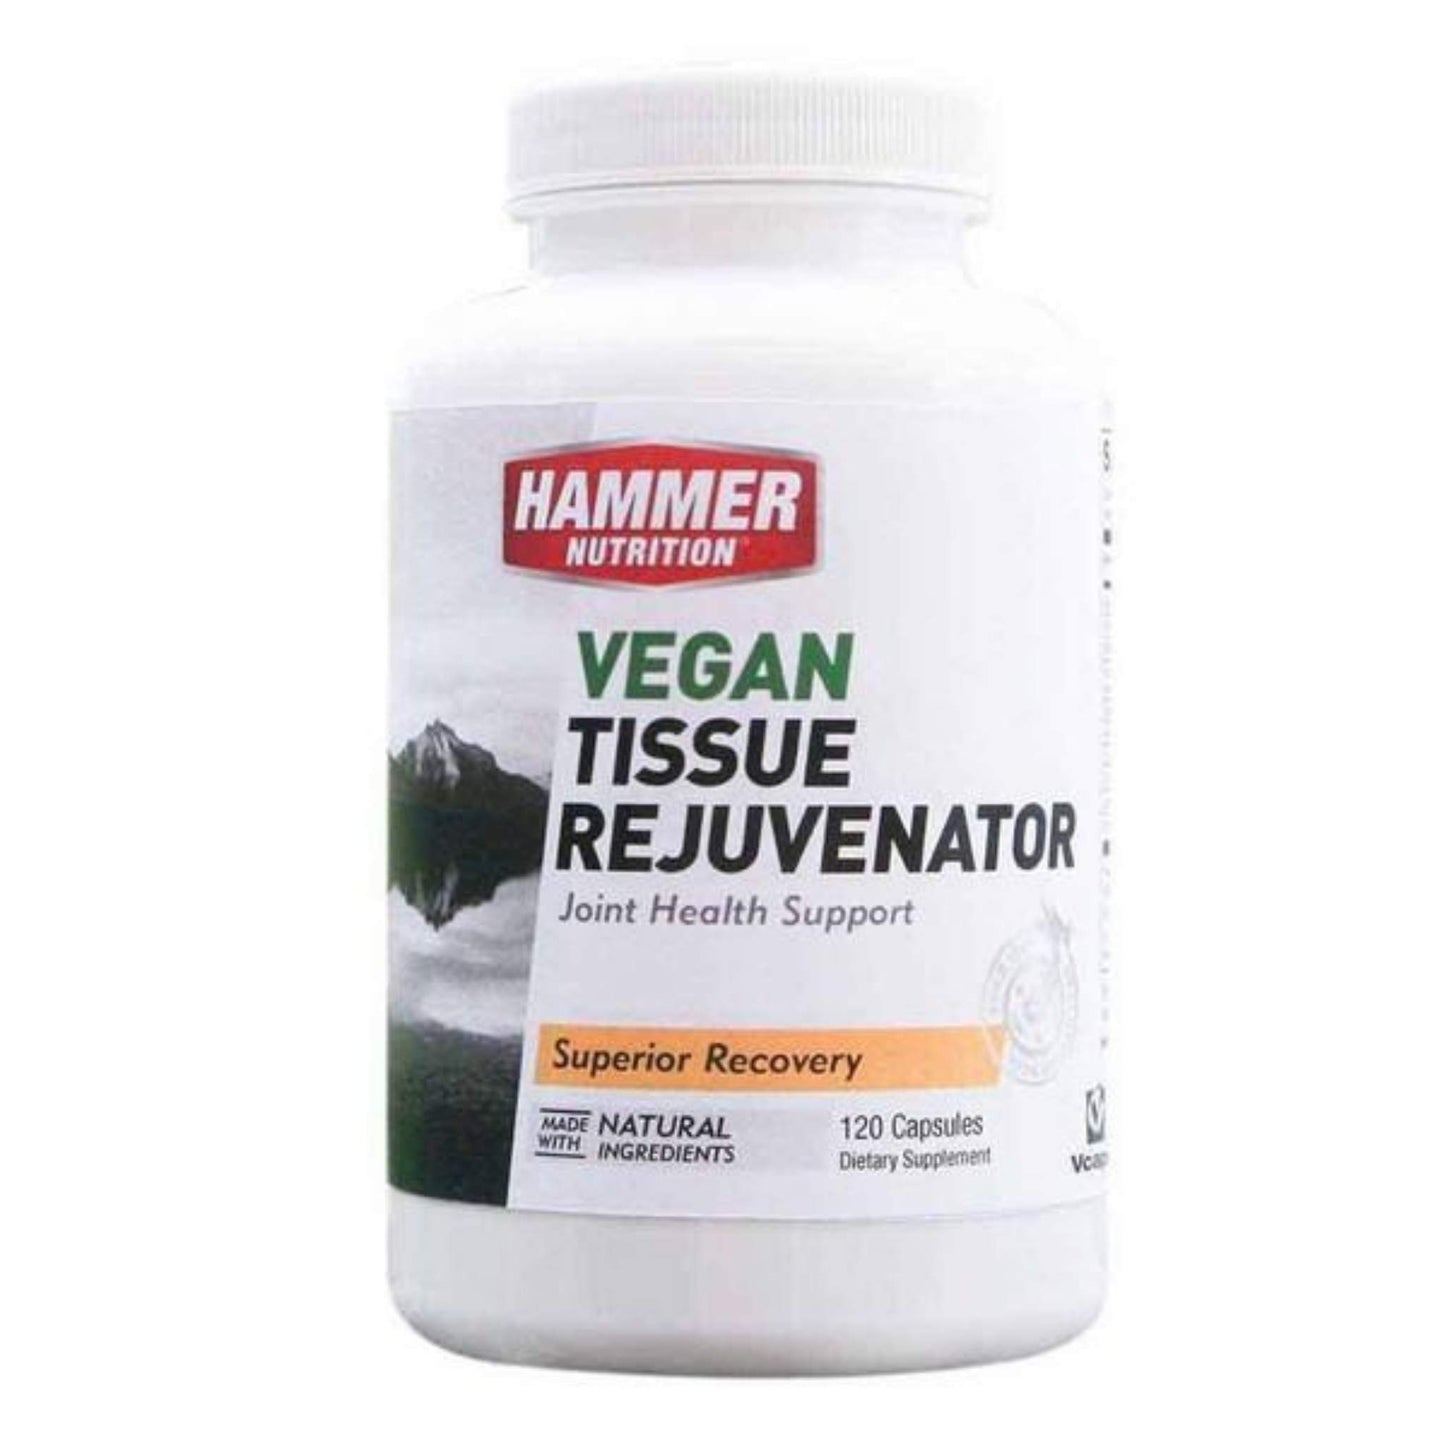 Hammer Nutrition - Vegan Tissue Rejuvenator, 120 caps, Team Perfect